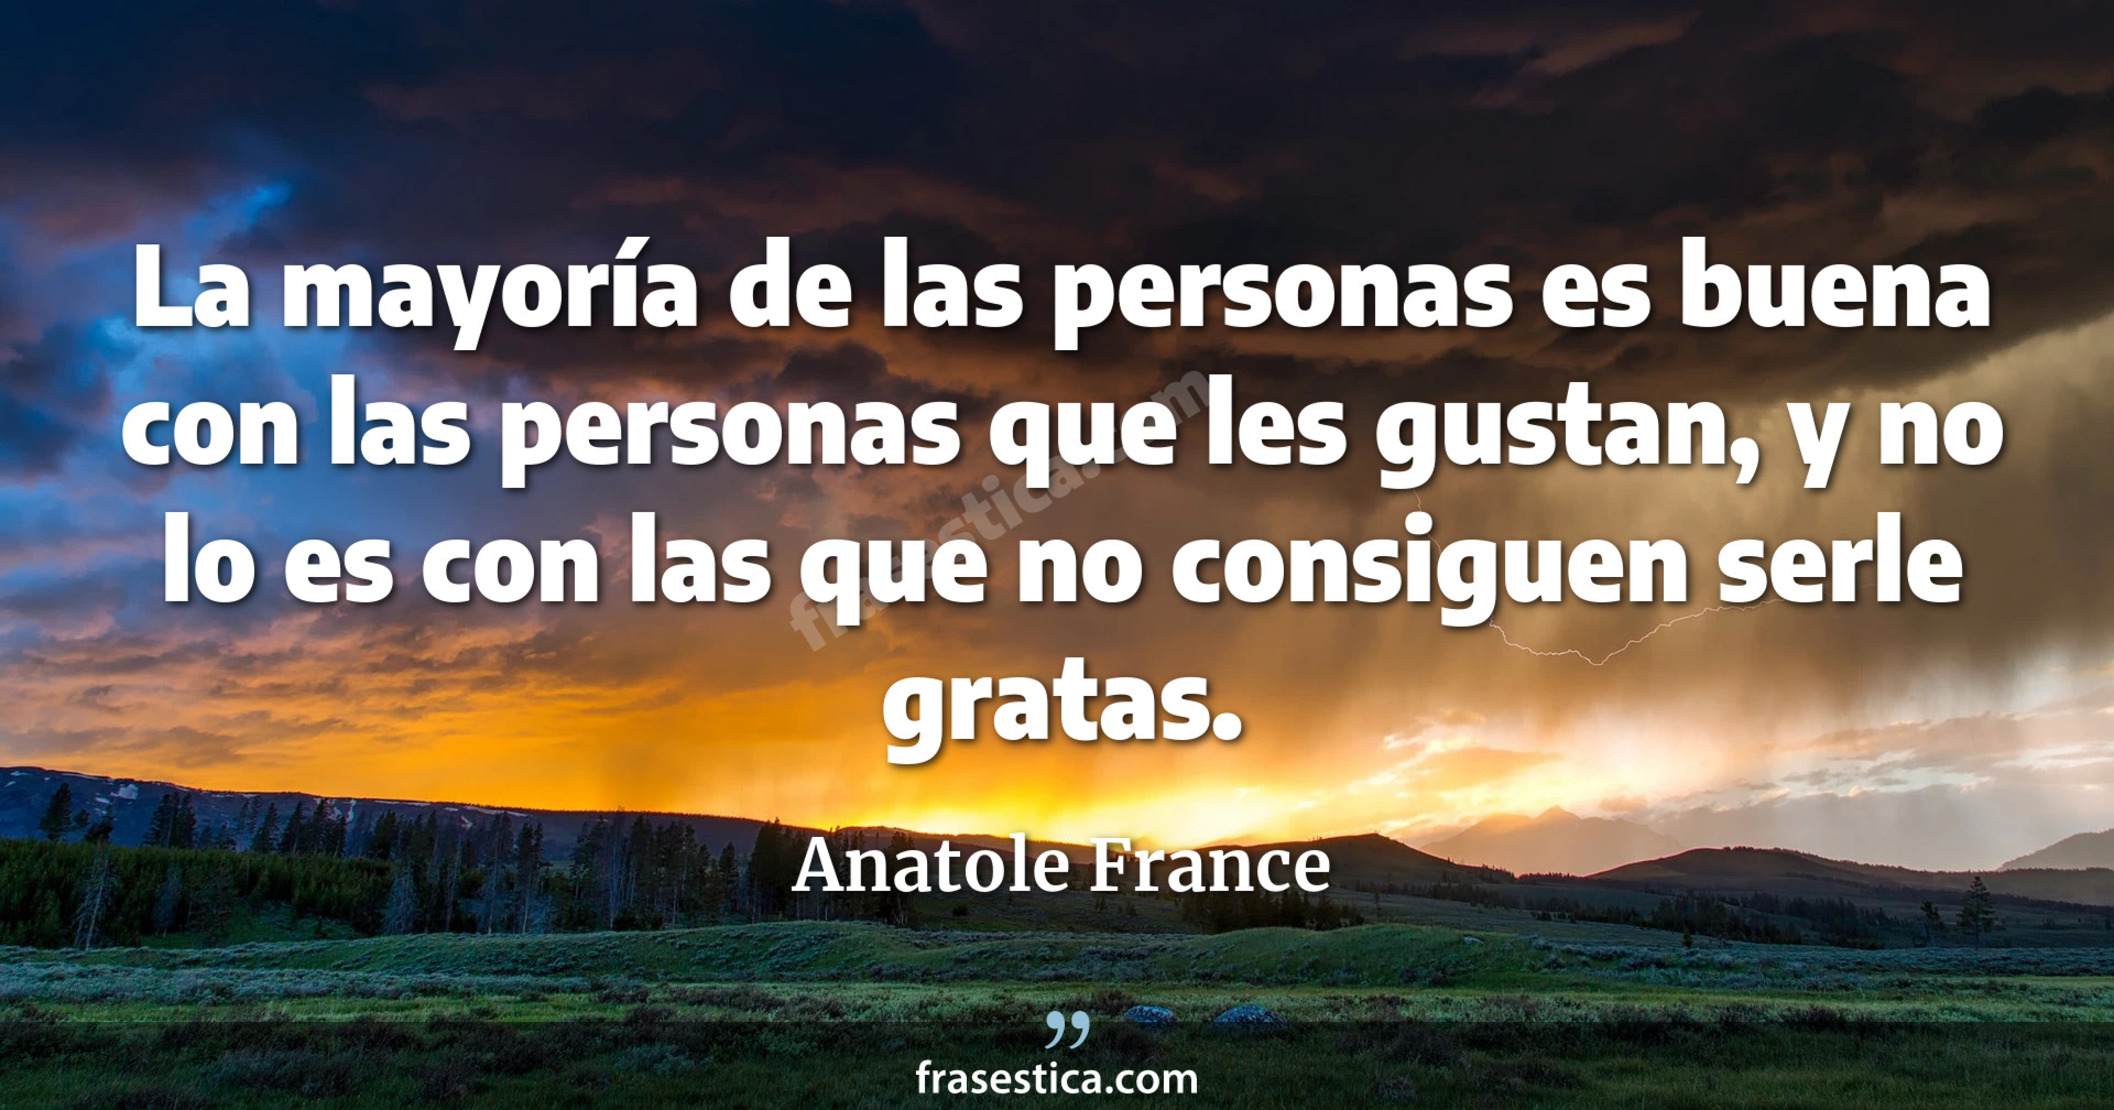 La mayoría de las personas es buena con las personas que les gustan, y no lo es con las que no consiguen serle gratas. - Anatole France